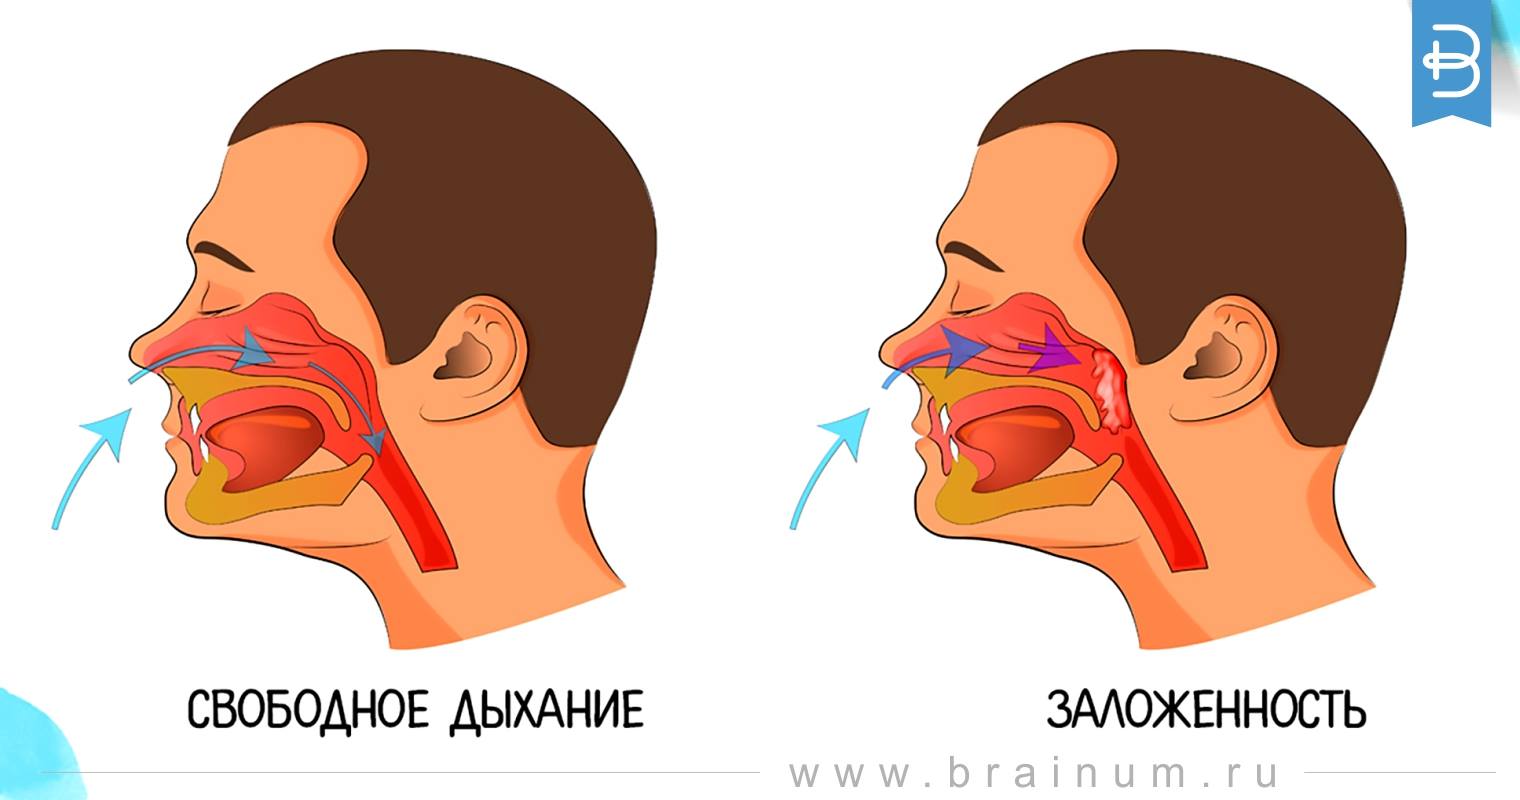 Общая заложенность носа